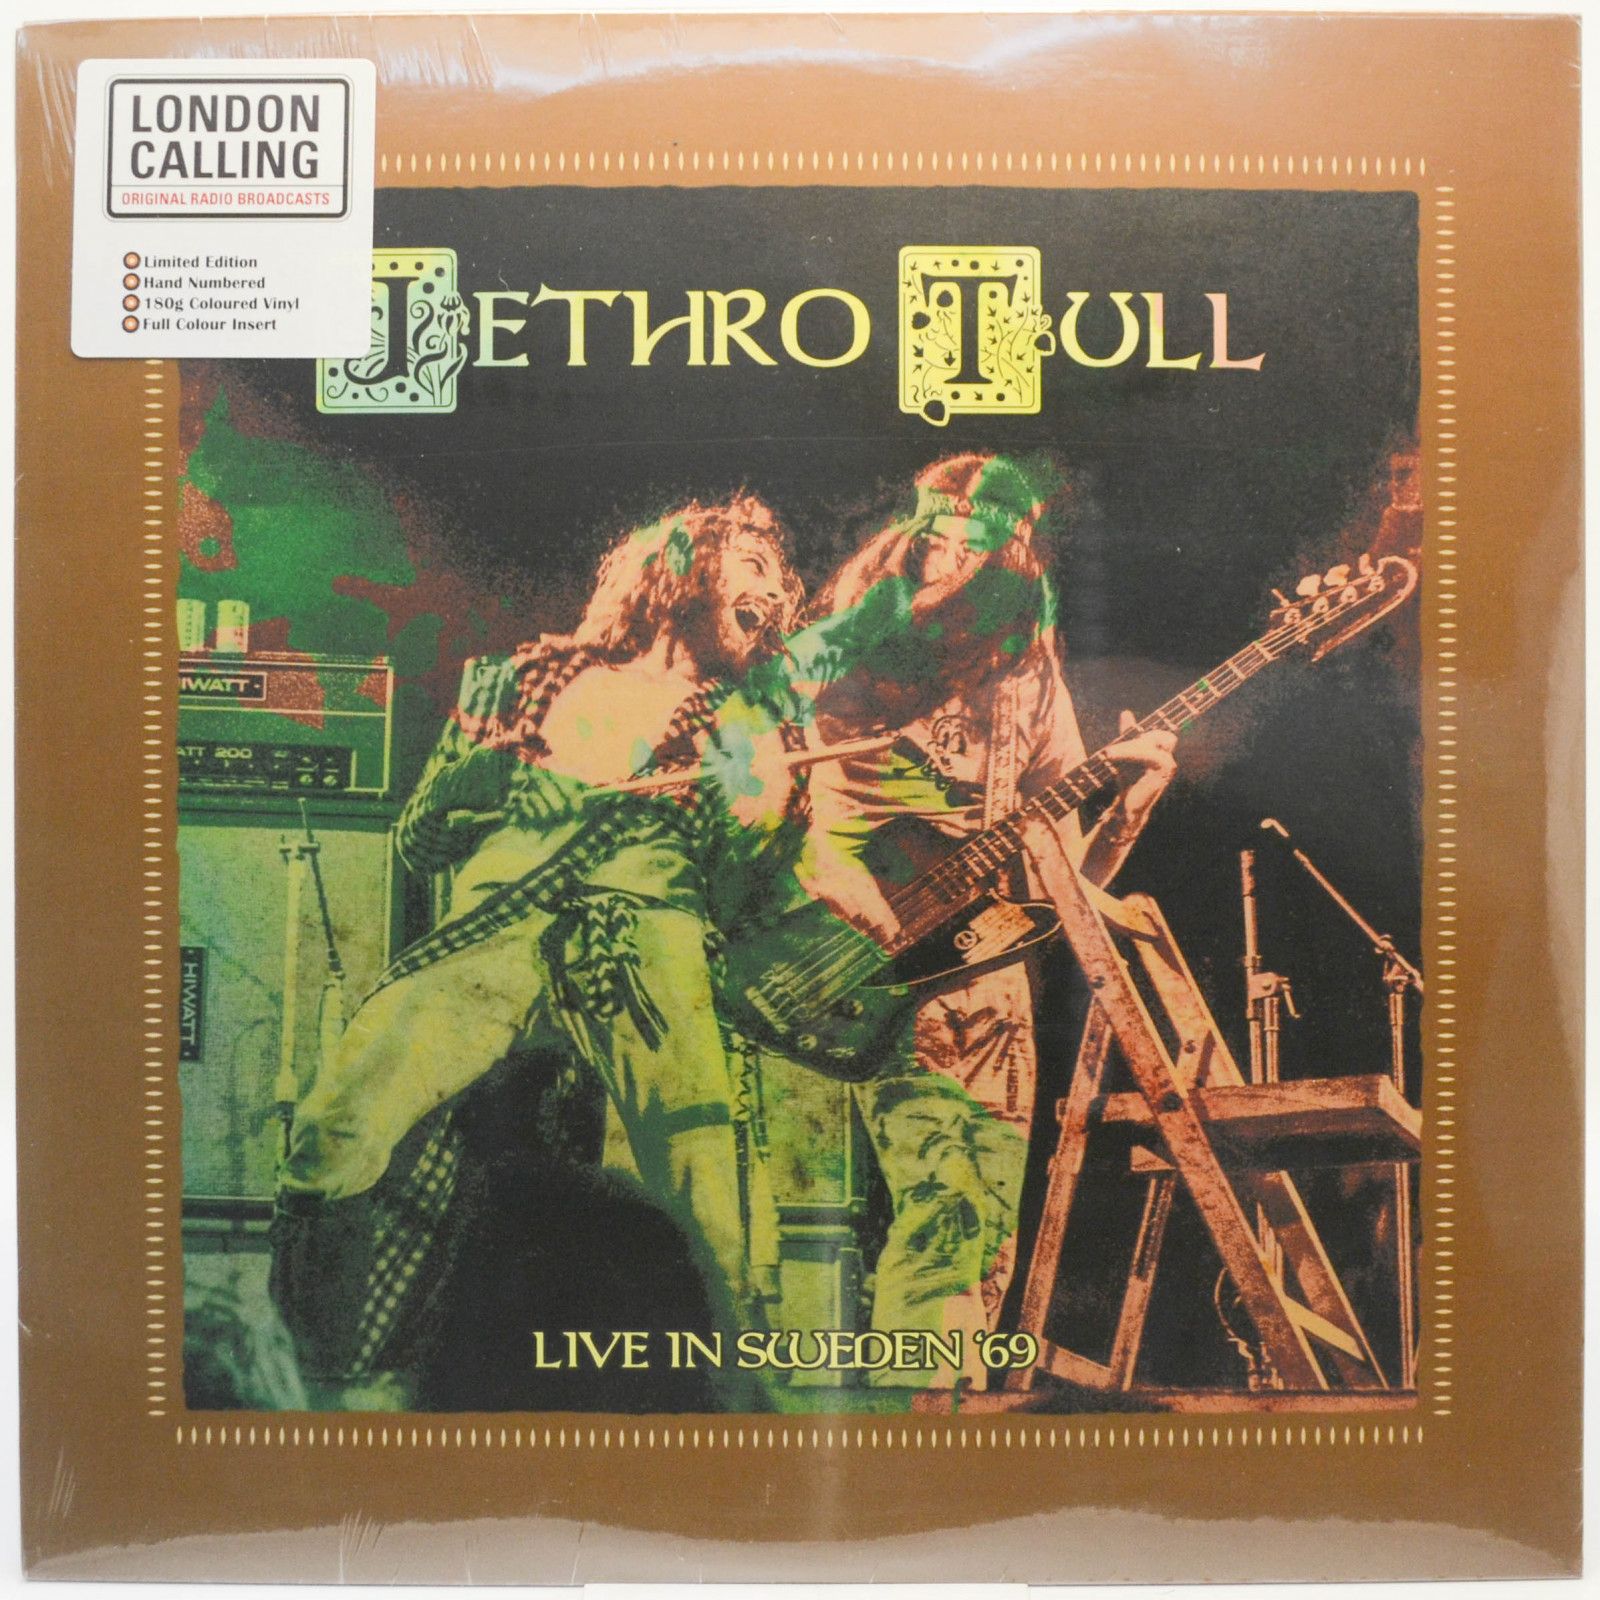 Jethro Tull — Live In Sweden '69, 2020